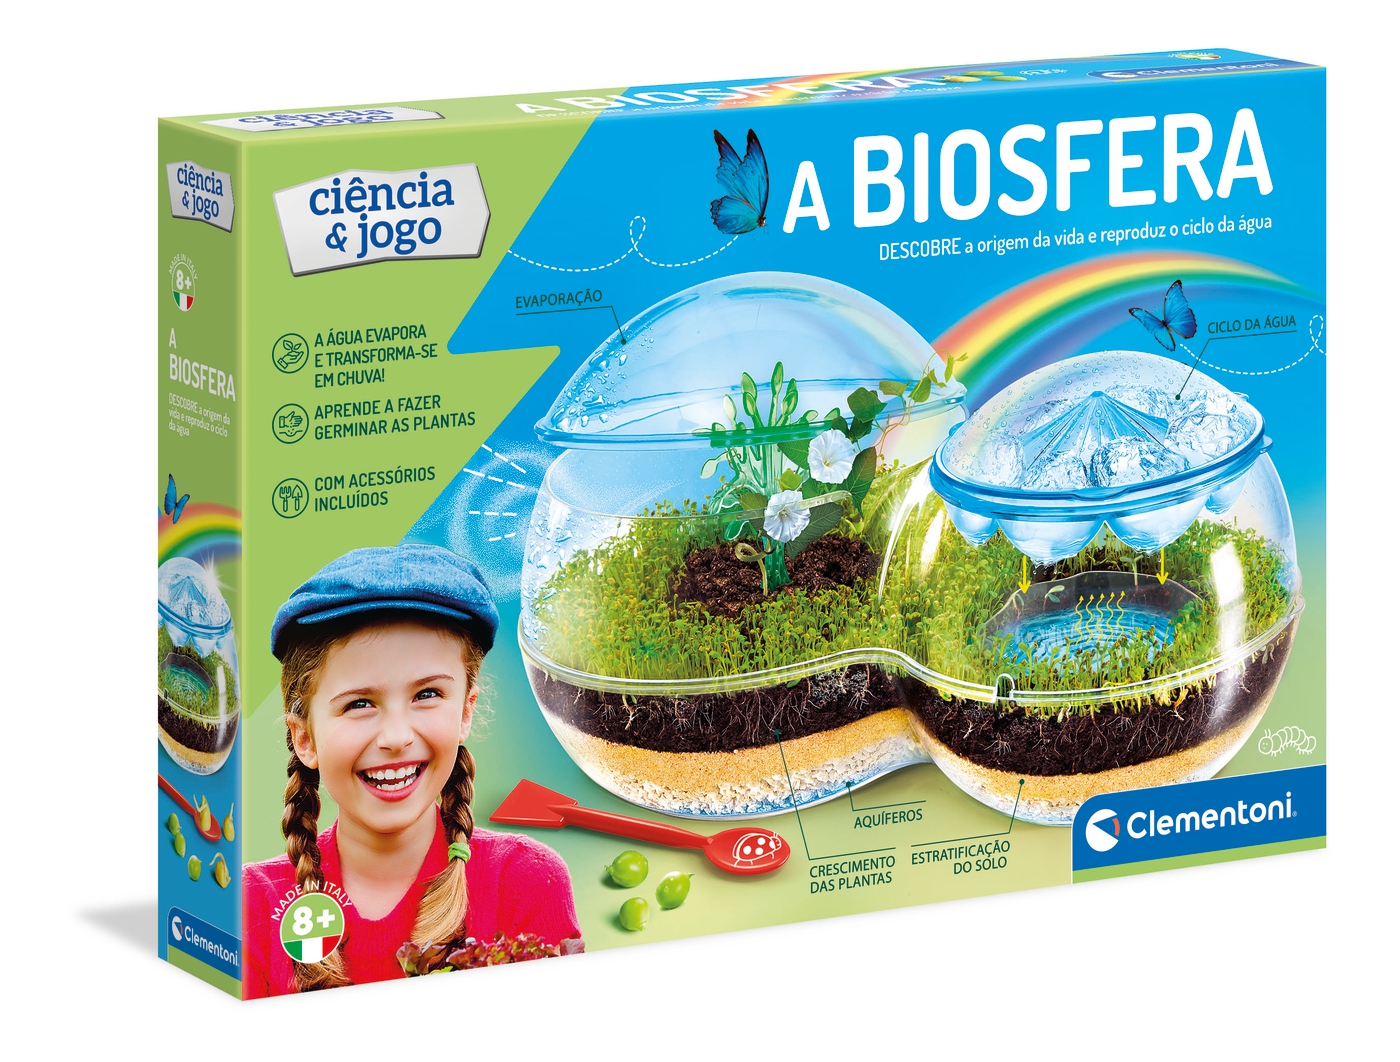 Clementoni Ciência & Jogo - A Biosfera